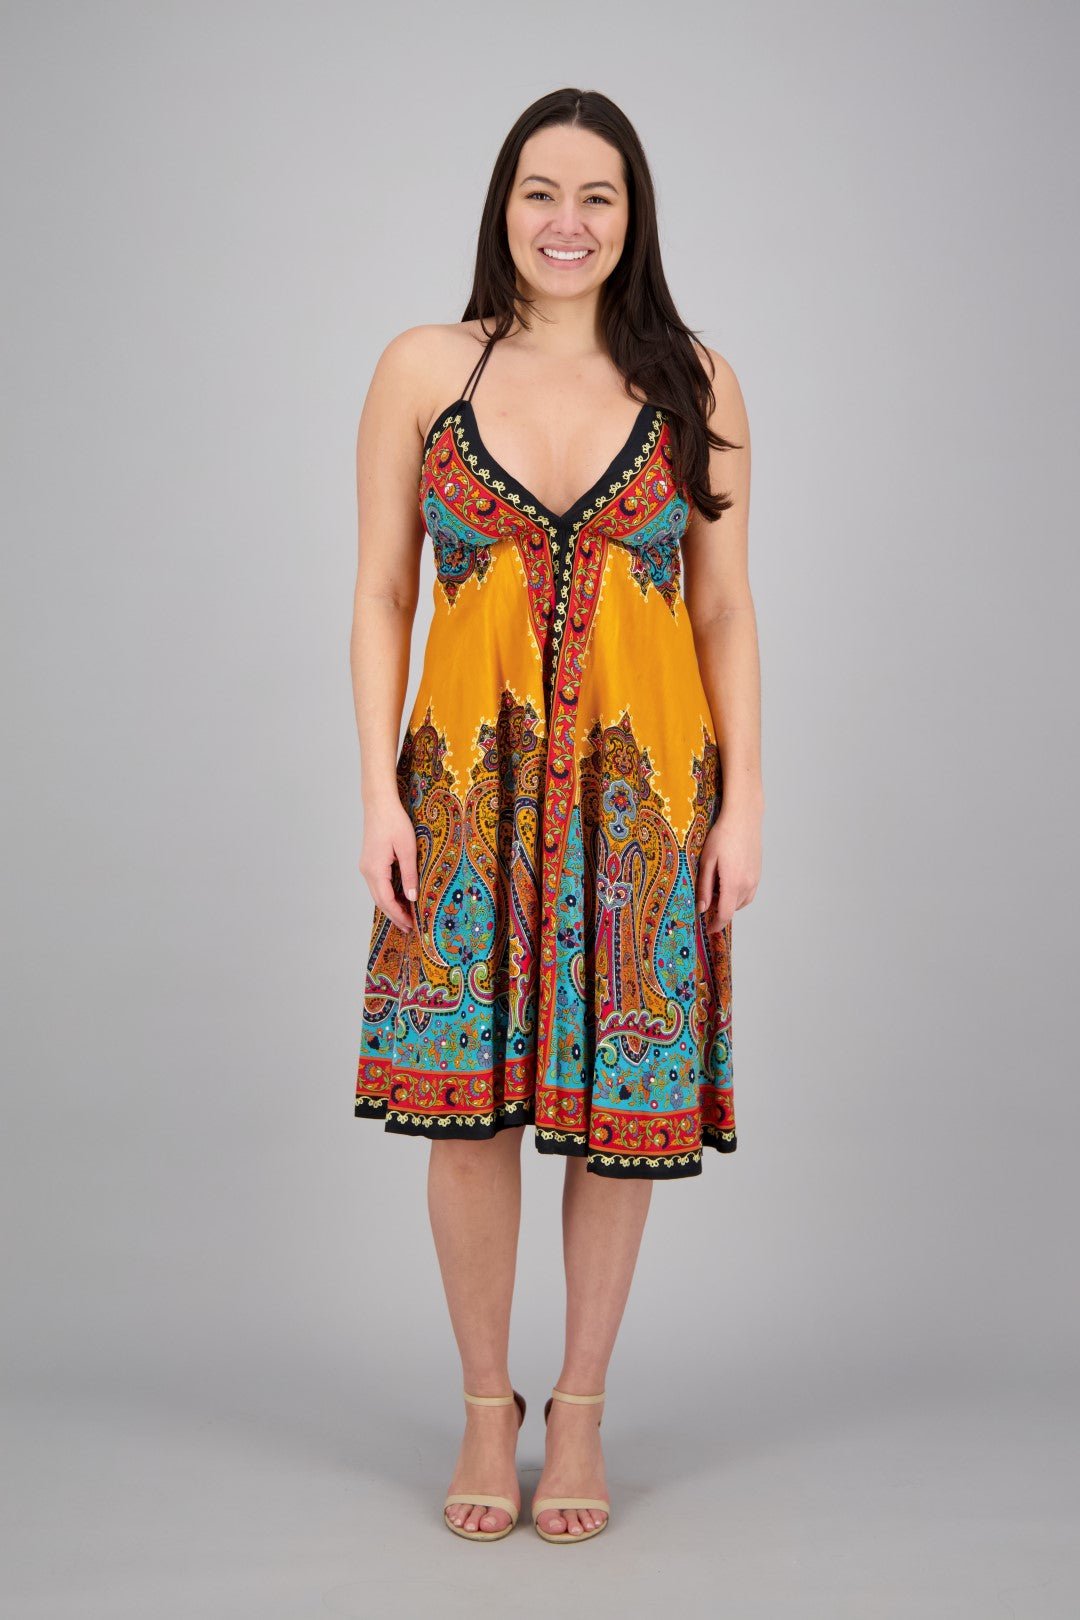 Mid-Length Halter Top Batik Dress 1969 - Advance Apparels Inc